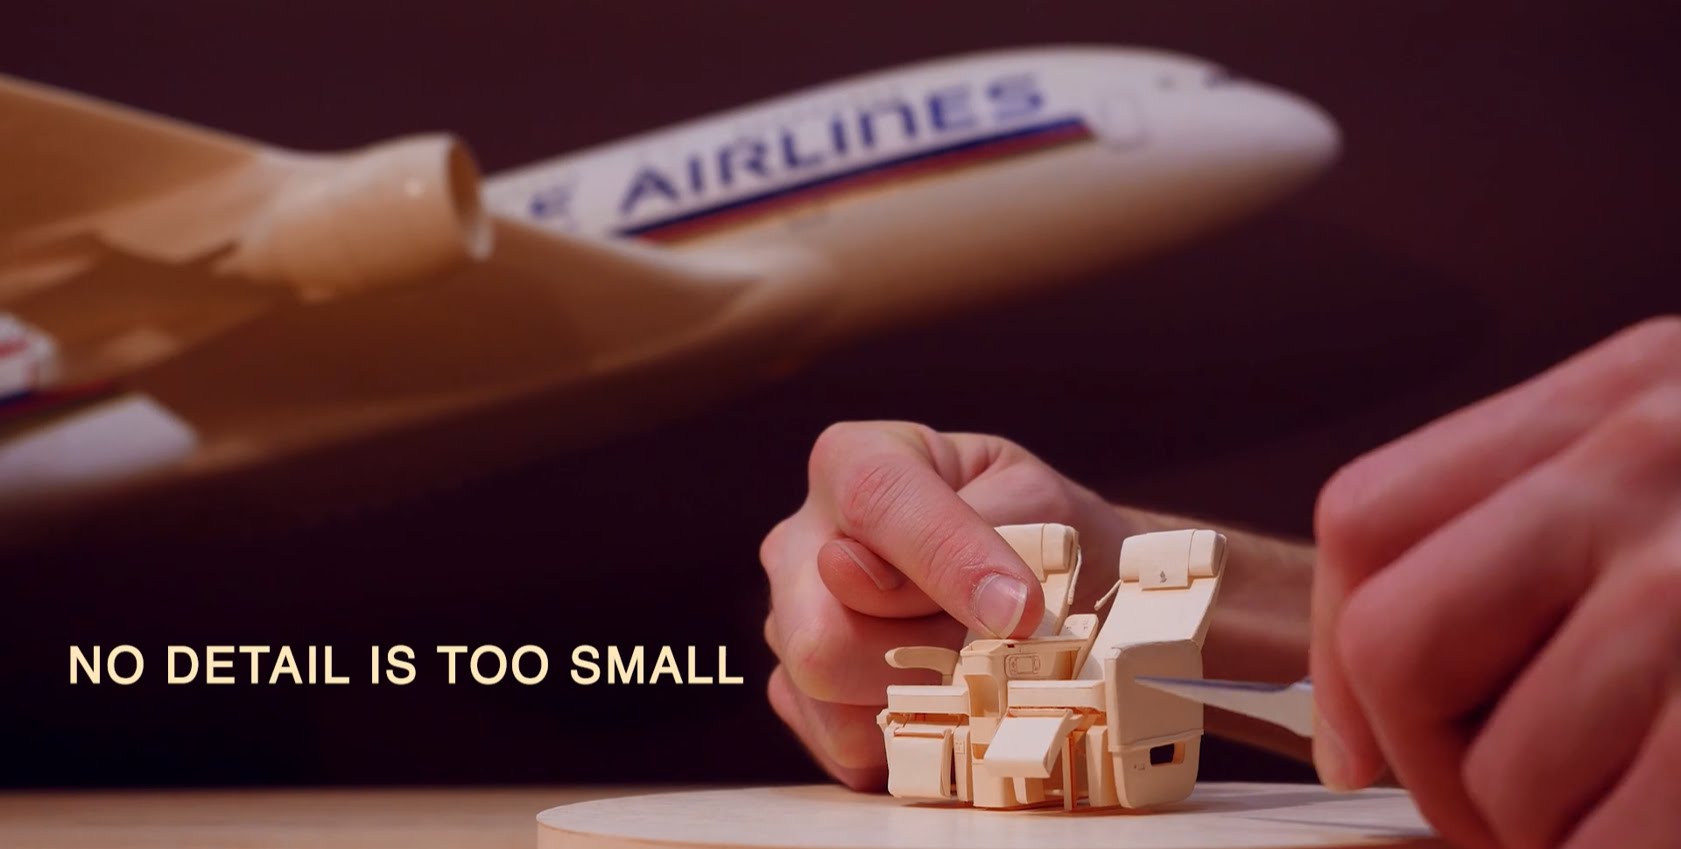 โฆษณาใหม่ Singapore Airlines ใส่ใจแม้รายละเอียดระดับเล็กจิ๋ว